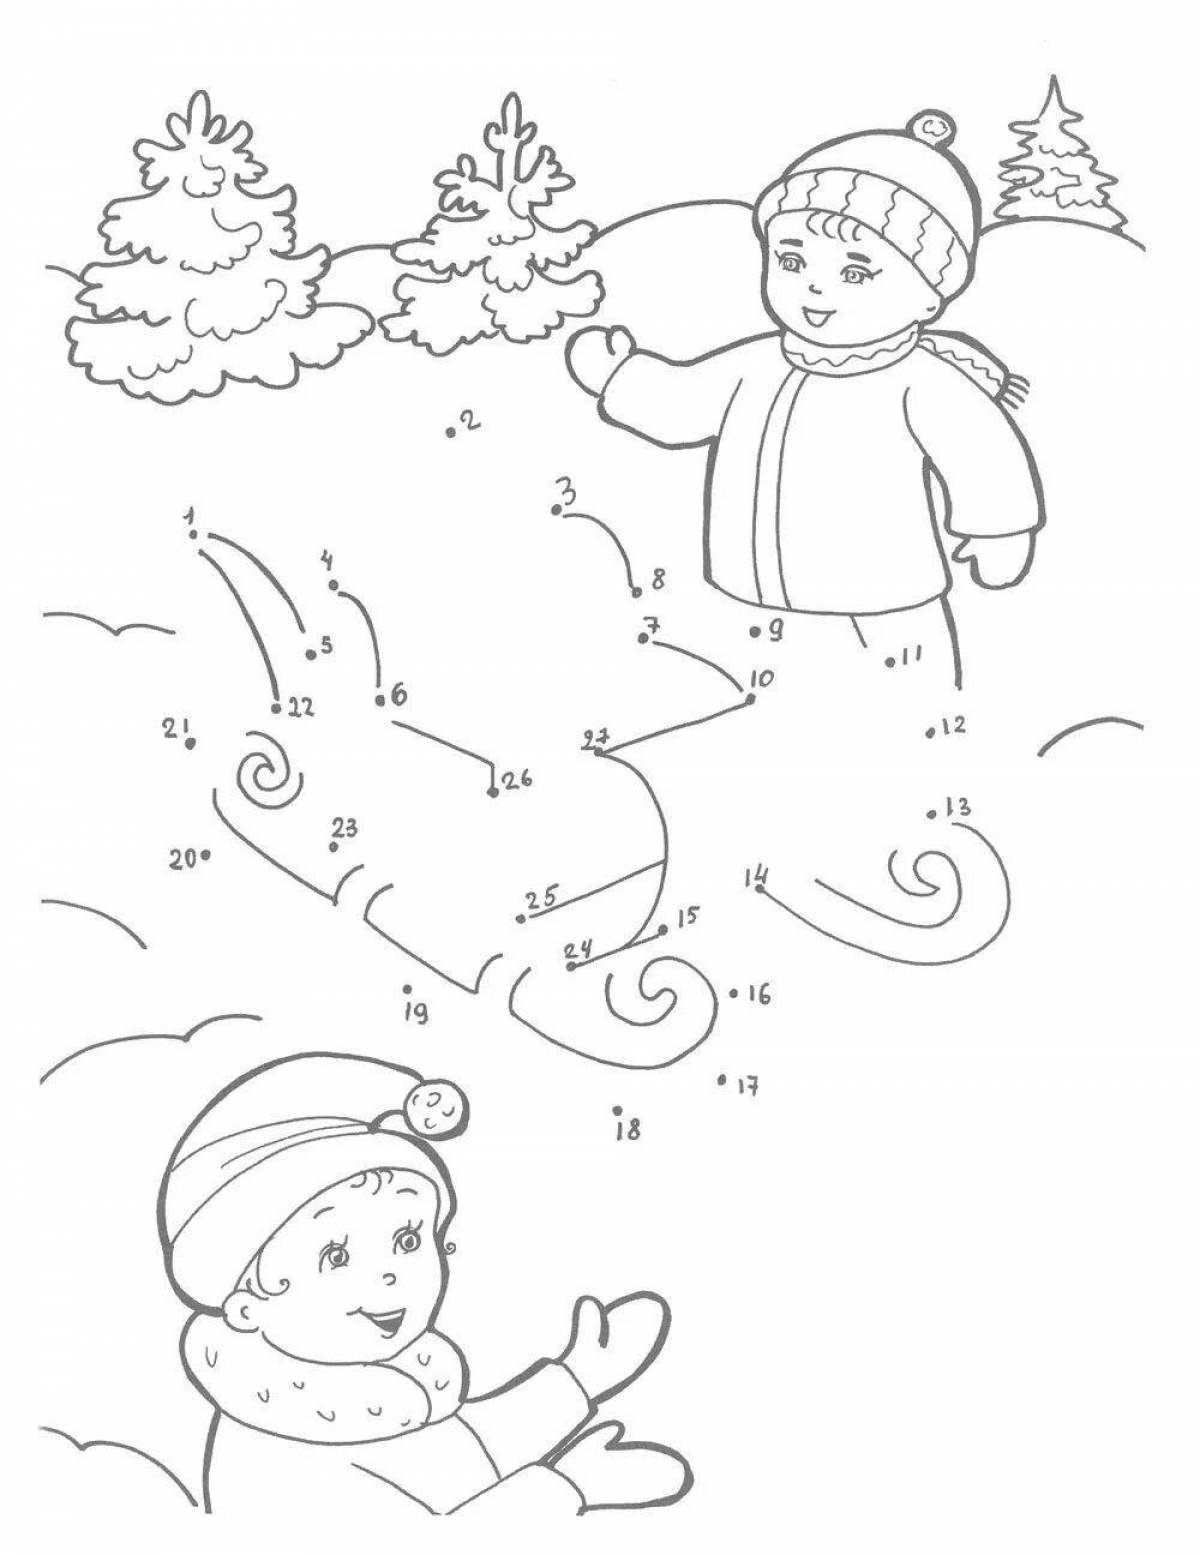 Pre-k snowy winter coloring page